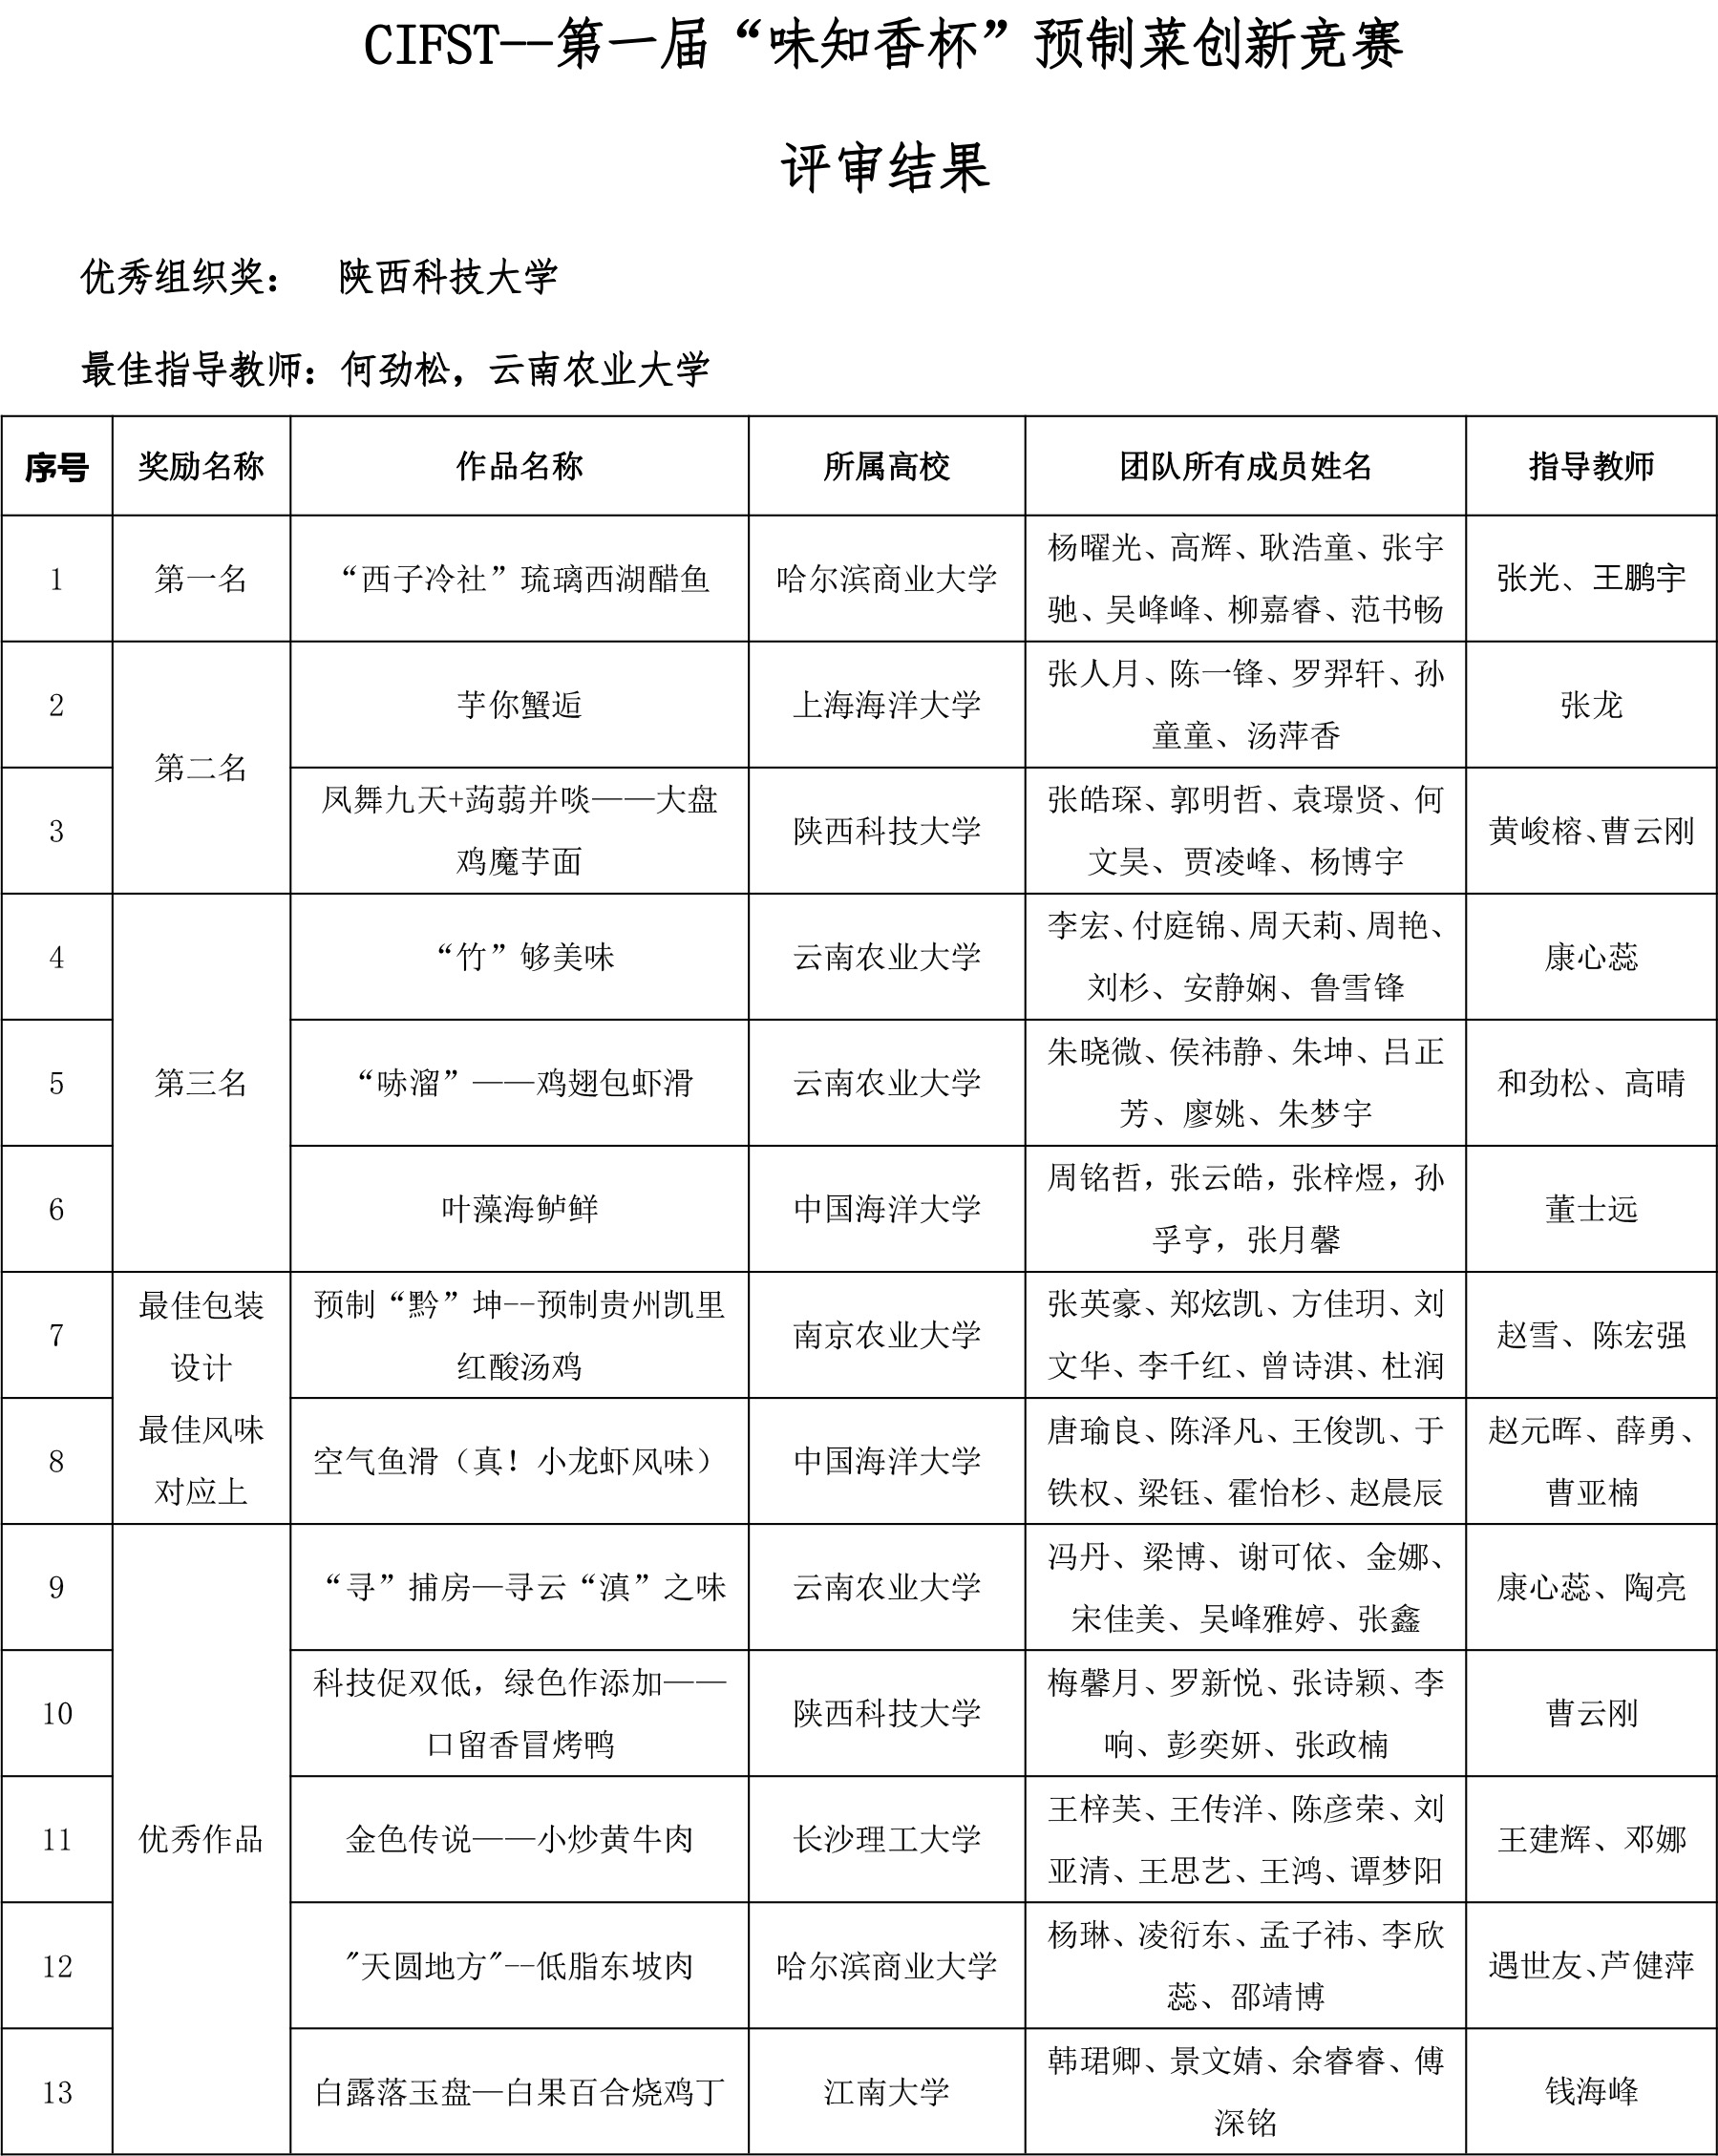 CIFST第一届味知香竞赛终评名单(1)-2